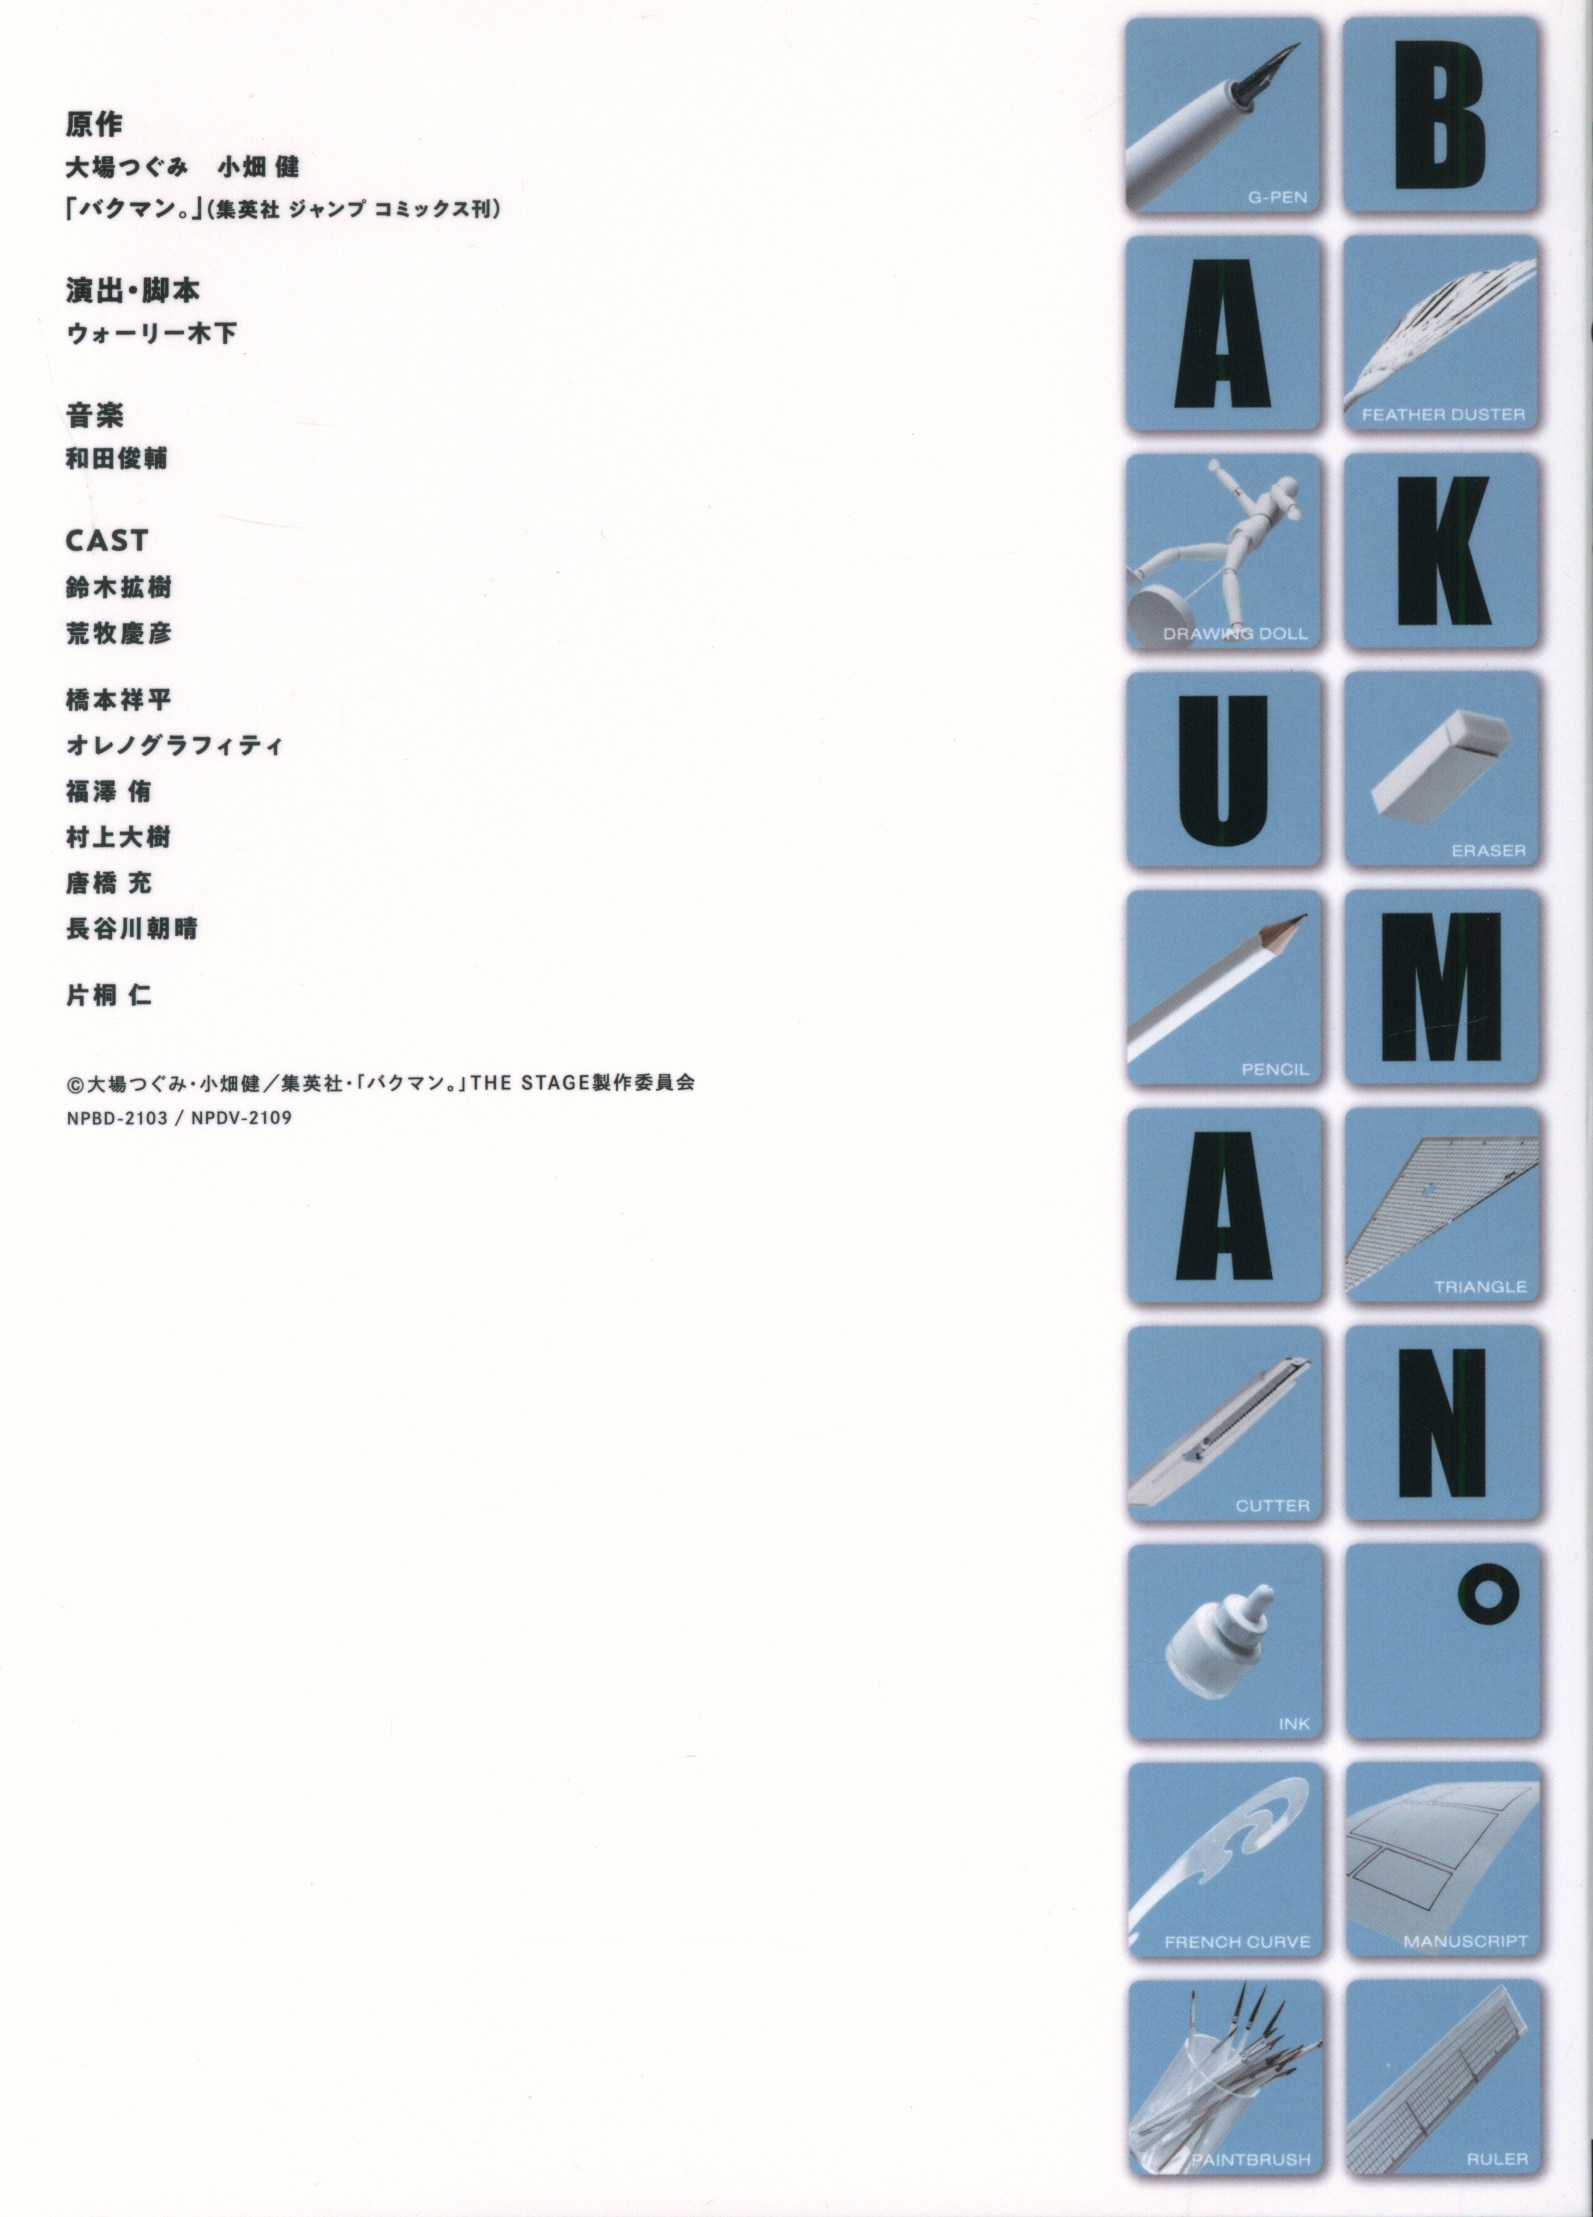 バクマンBAKUMAN THE STAGE Blu-ray - 舞台/ミュージカル